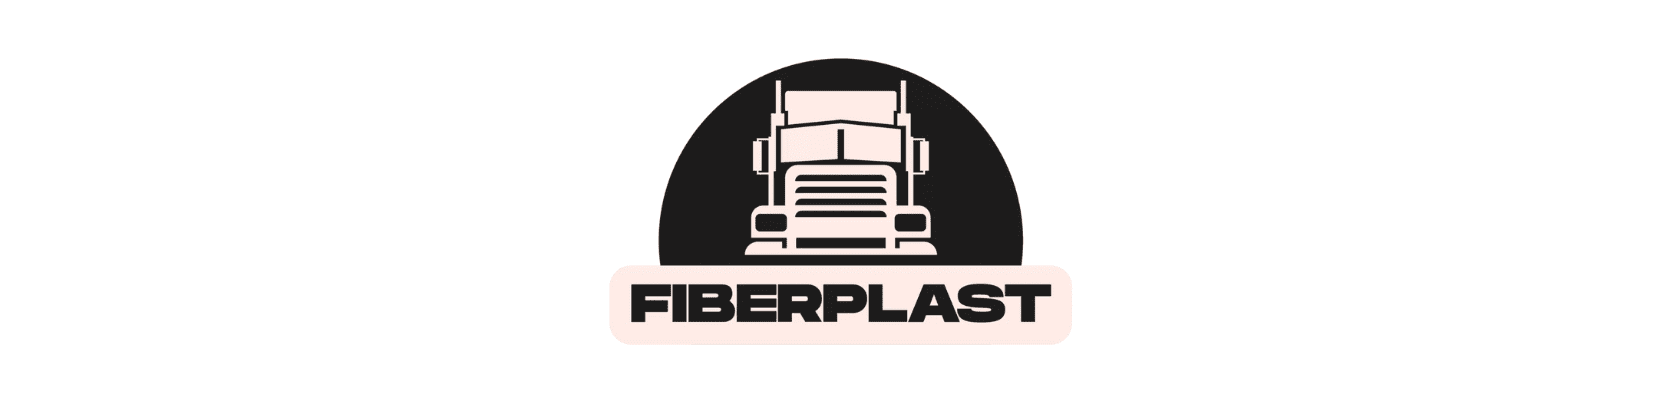 Fiberplast